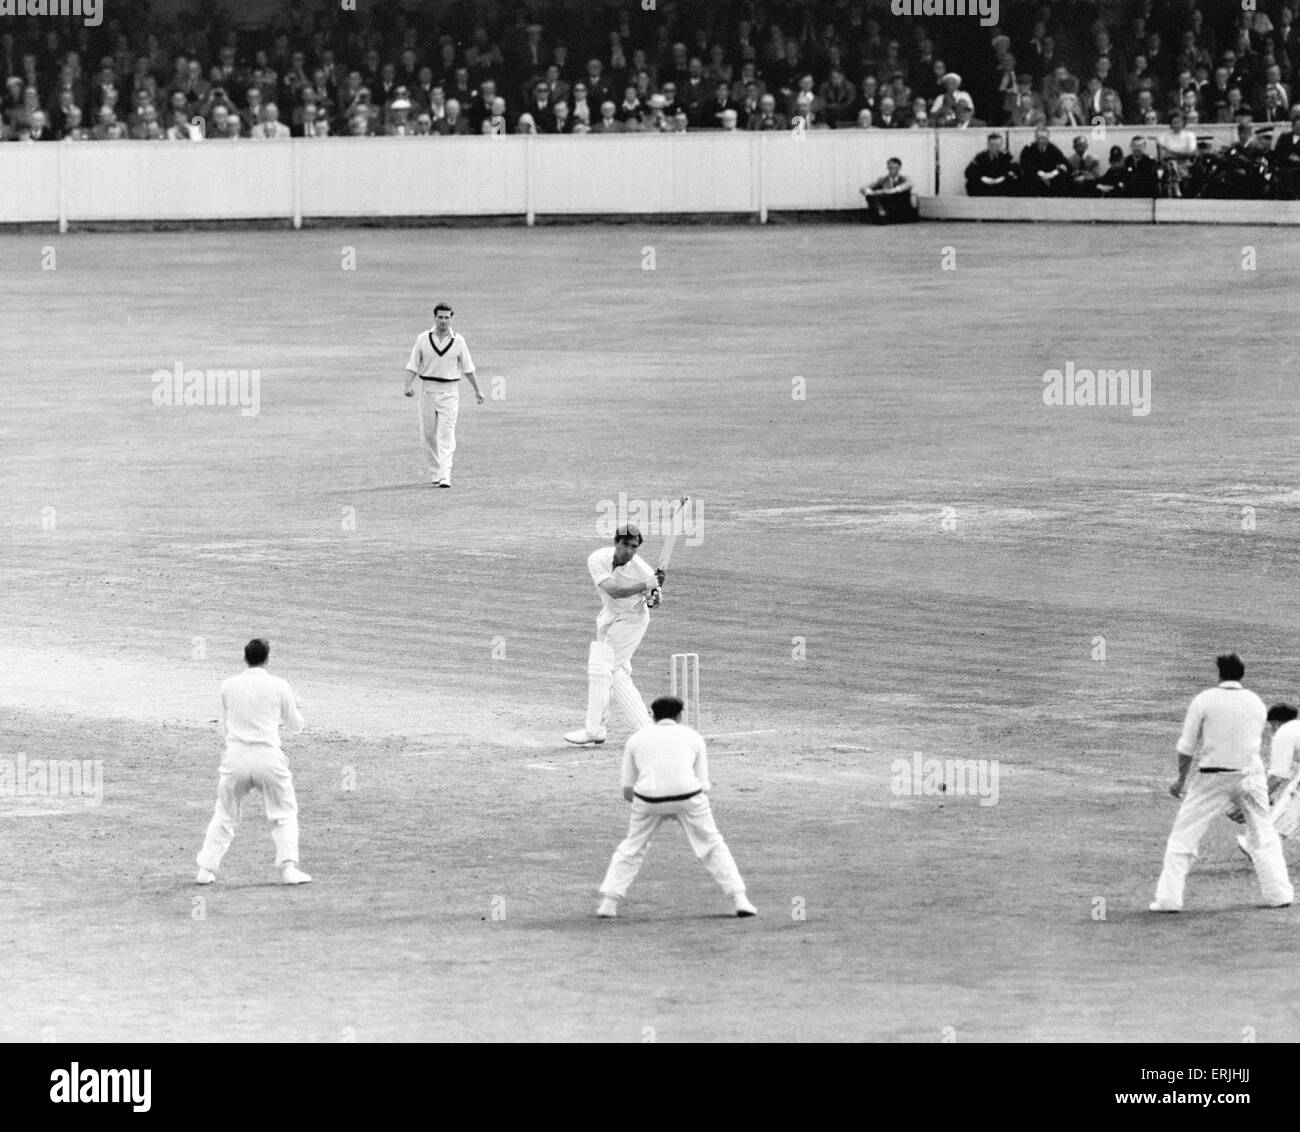 England v Australia quinta prueba coinciden en el Oval de la Ceniza. Inglaterra batsman Denis Compton golpea las carreras ganadoras para conservar las cenizas de Inglaterra. 19 de agosto de 1953. Foto de stock